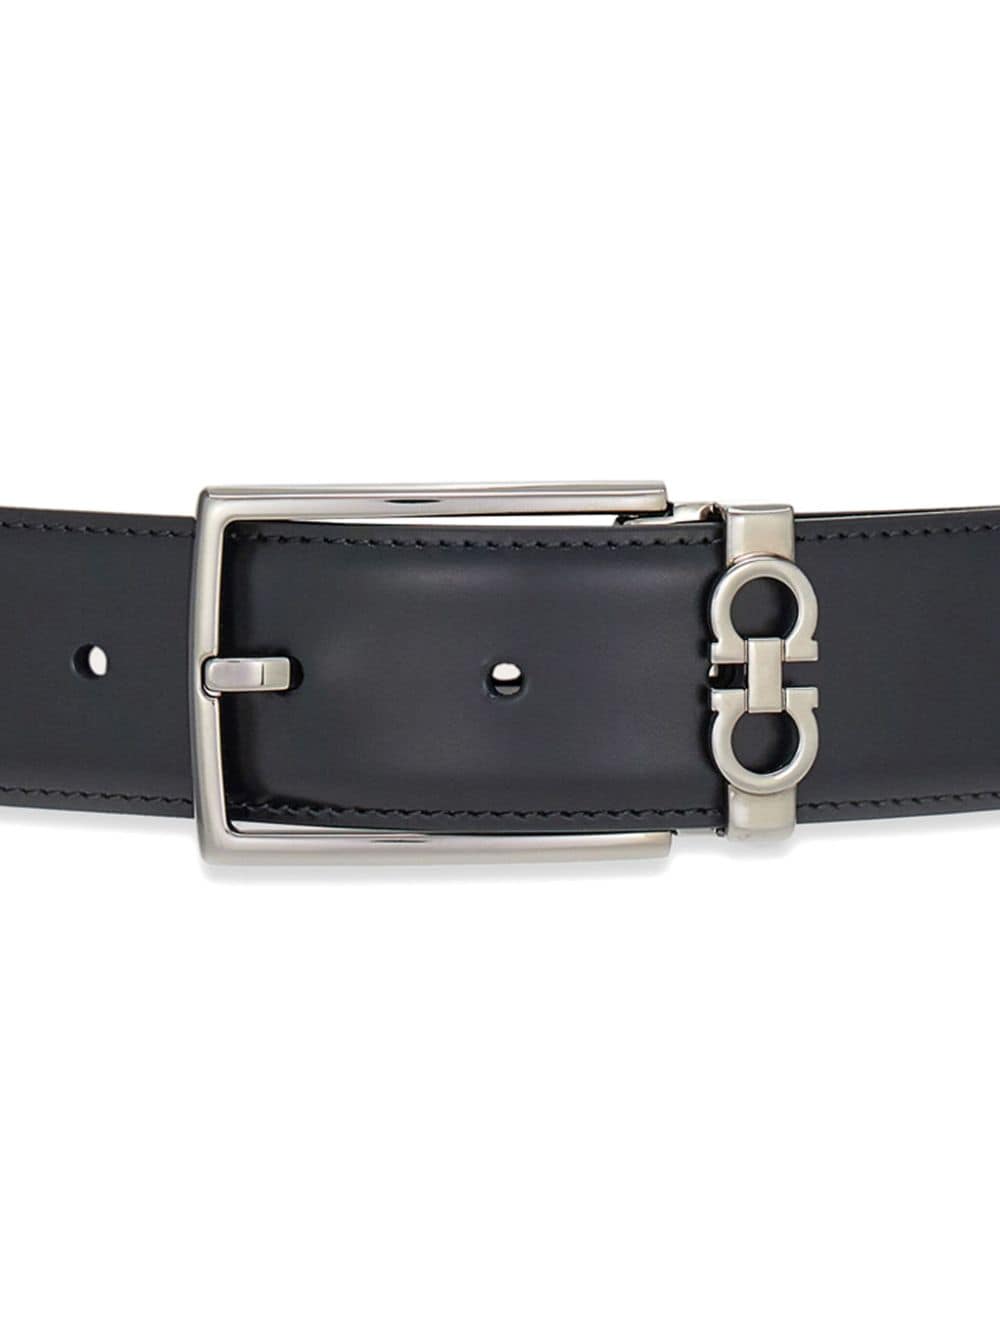 Ferragamo reversible Gancini leather belt - Blauw